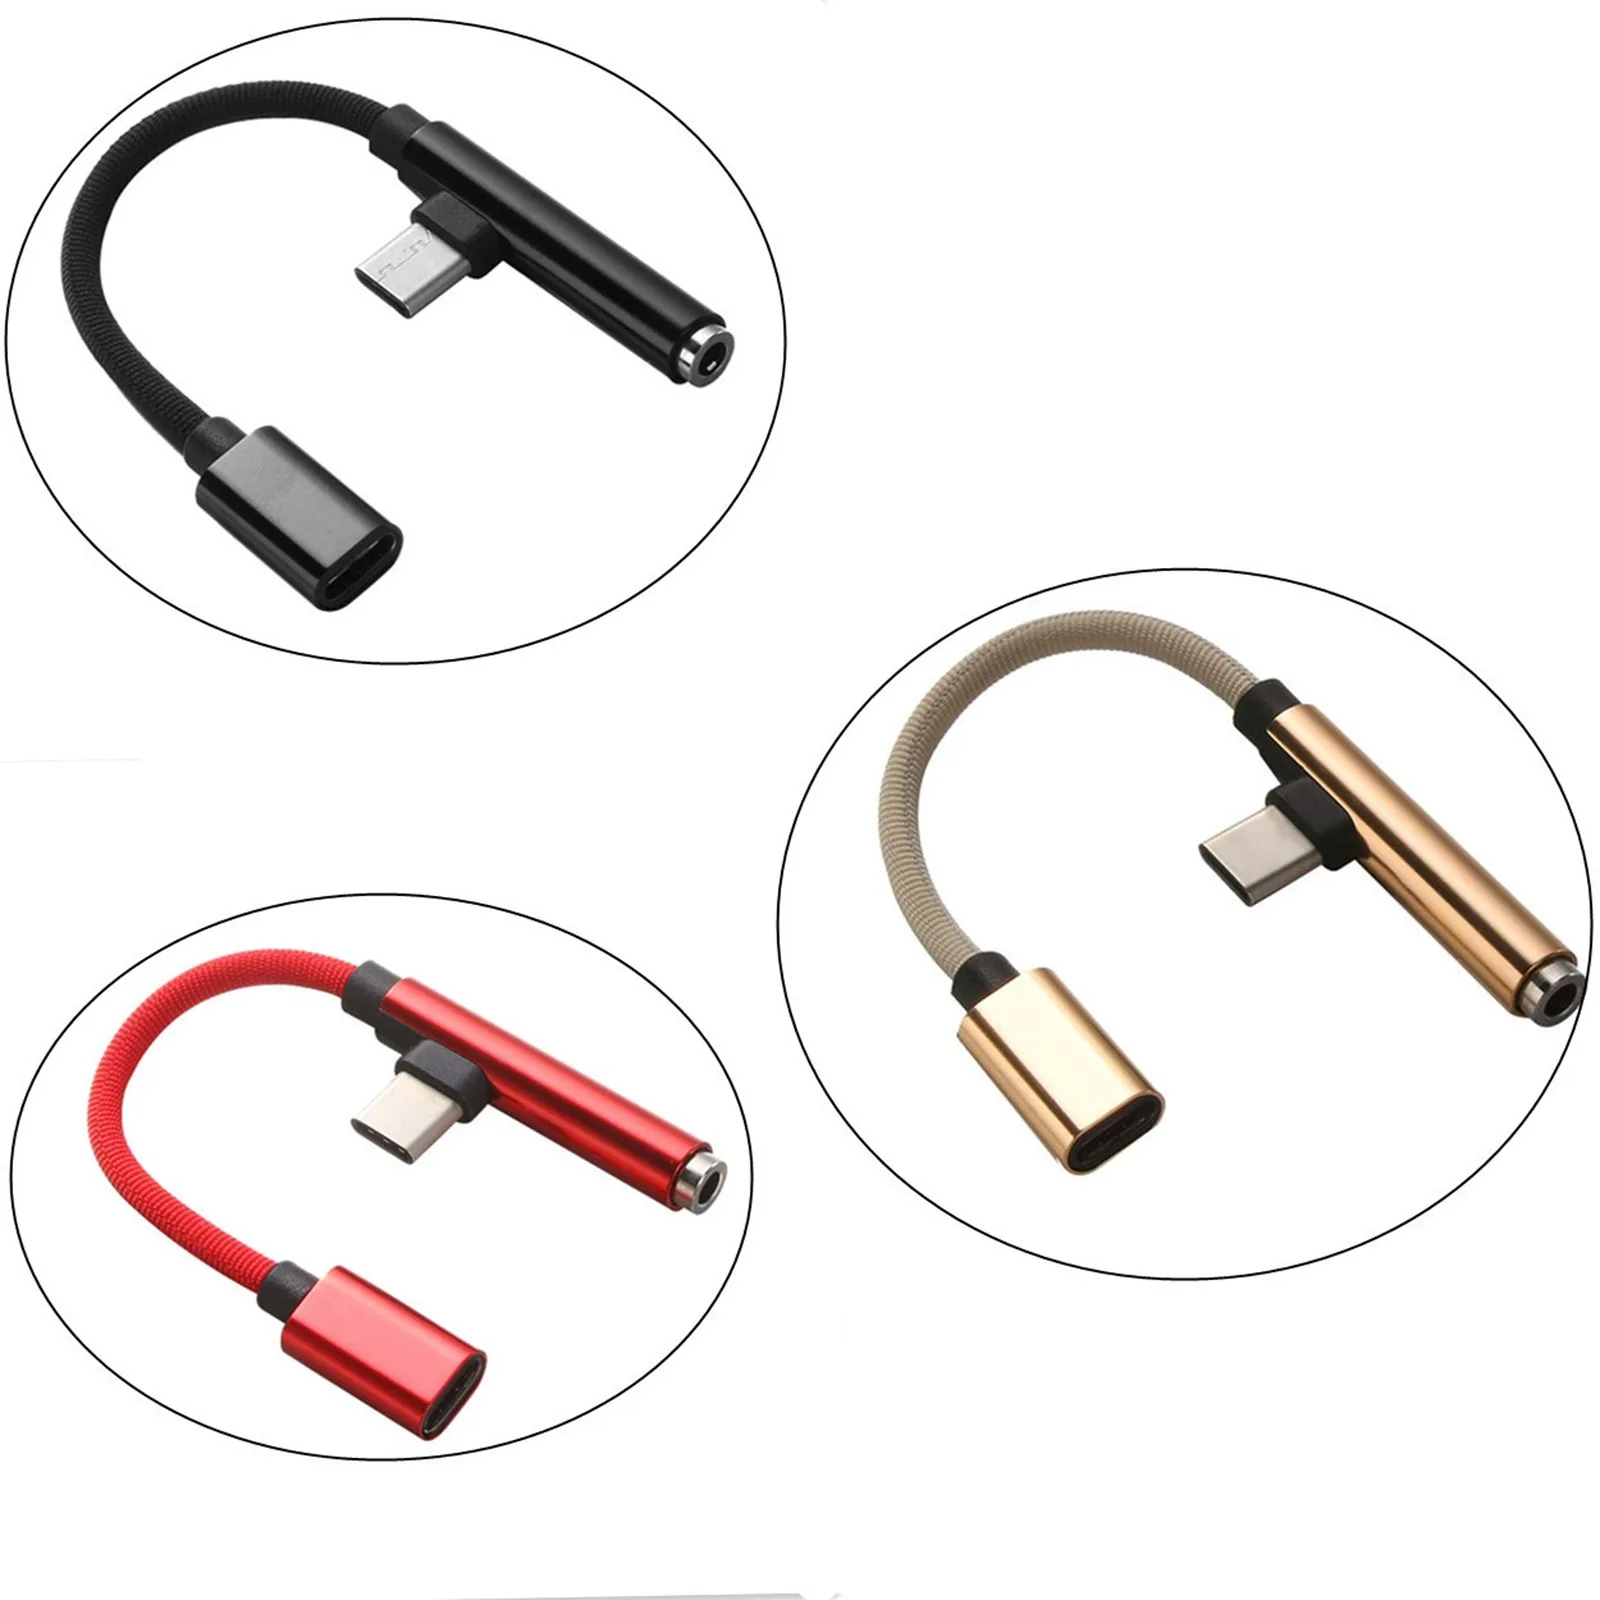 2 İn 1 USB Tip C İçin 3.5 mm Tip C Dişi Şarj Kulaklık Ses Jakı USB C şarj adaptörü Kablosu Samsung Xiaomi OPPO 5